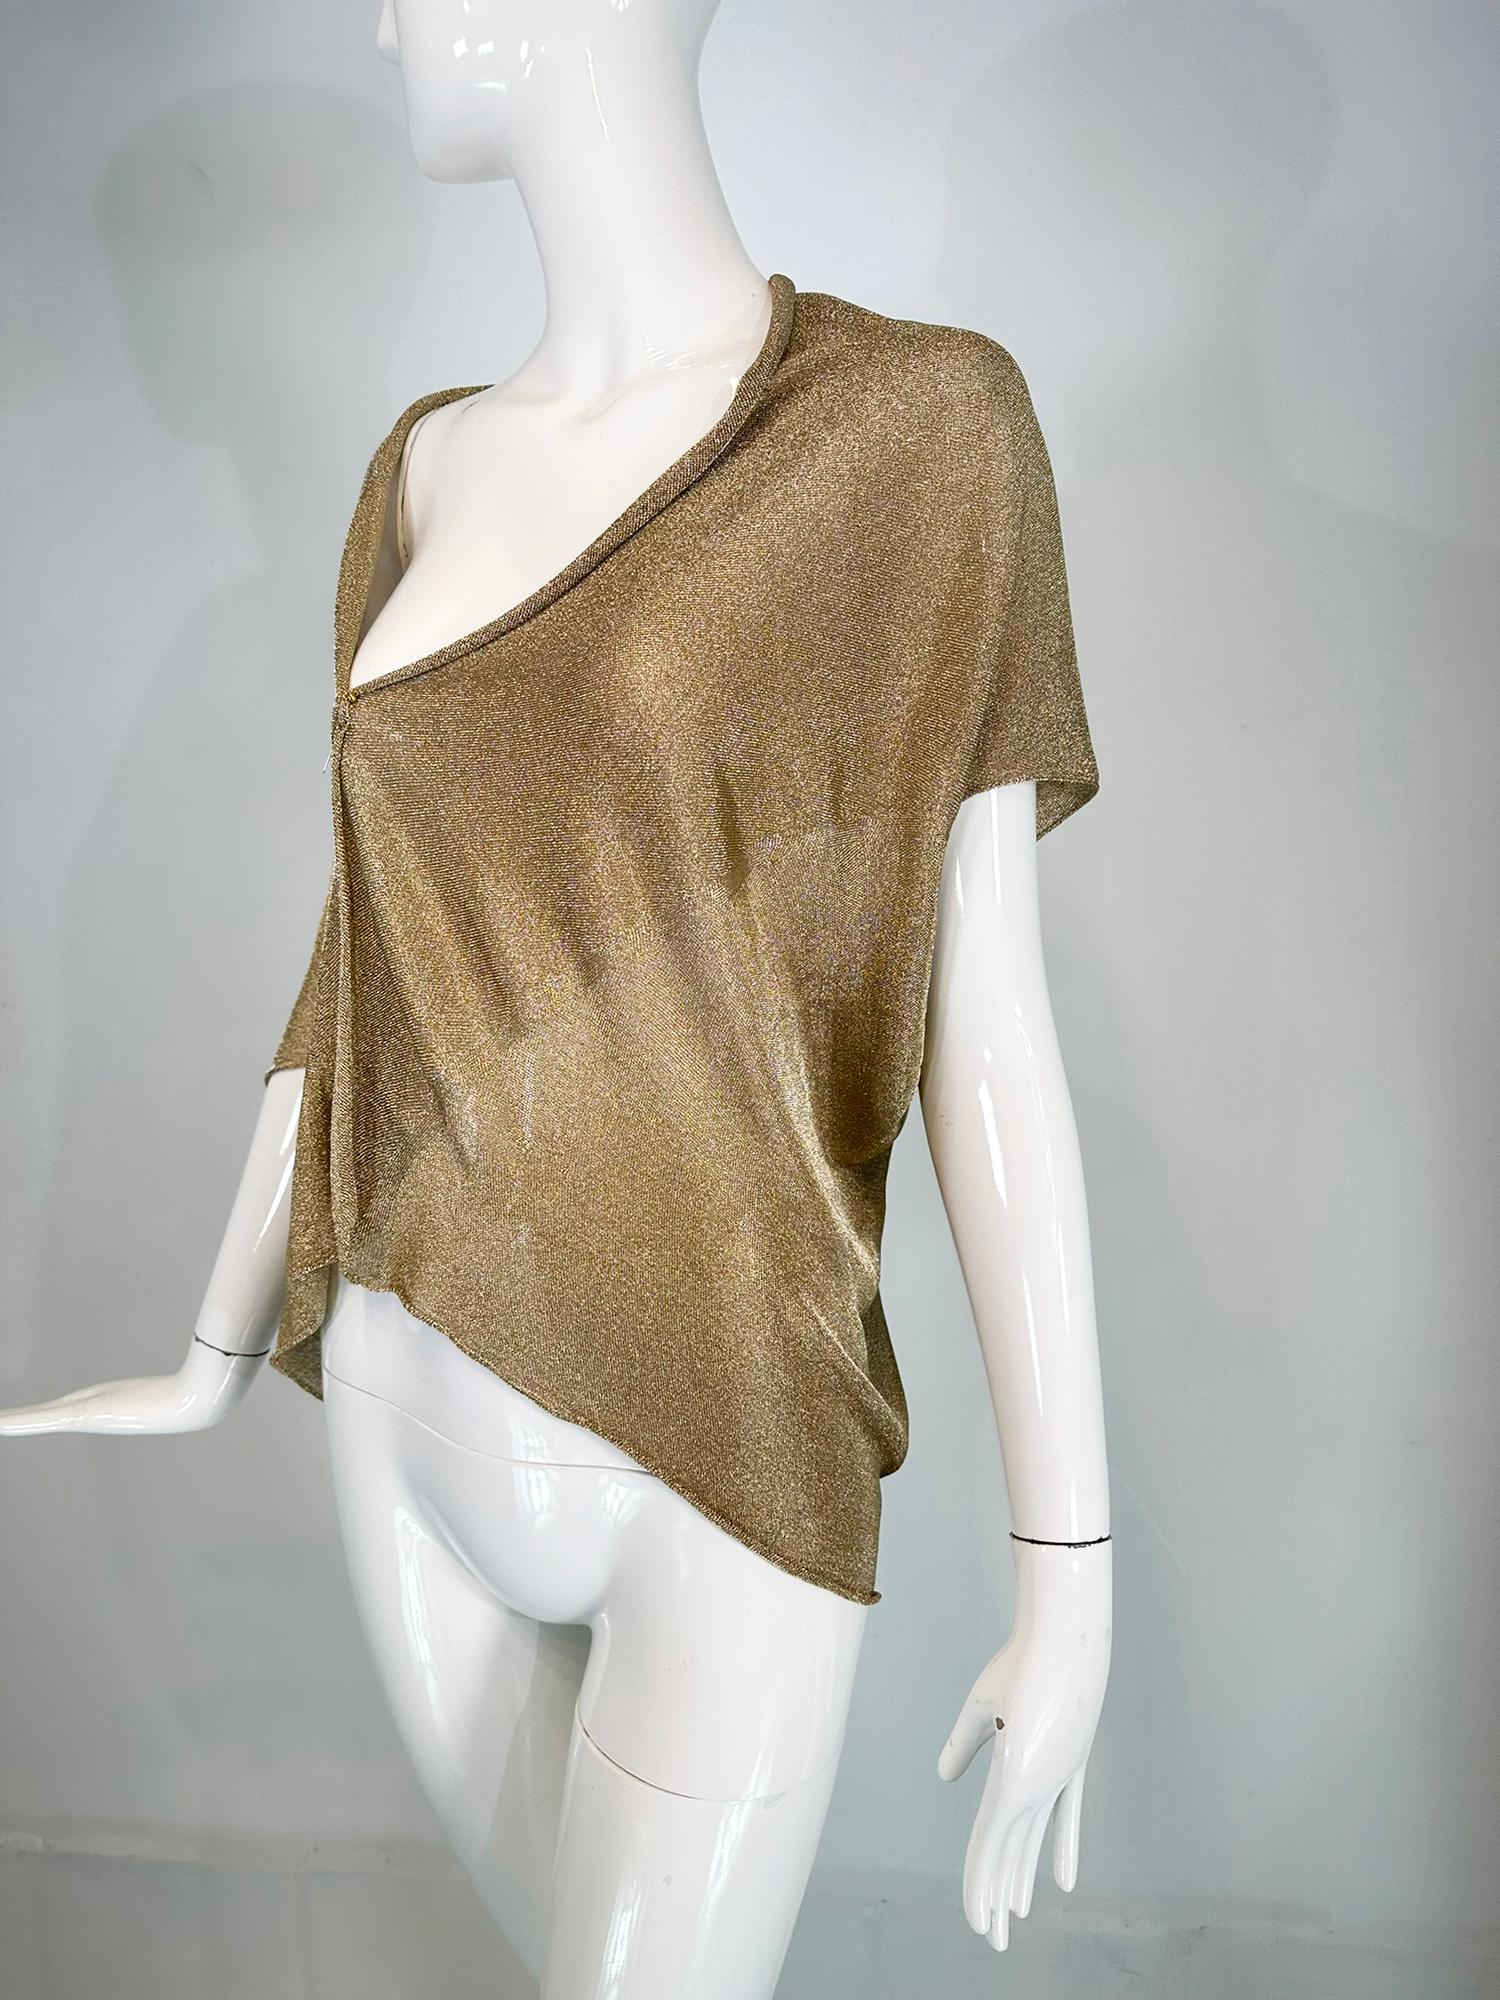 Alberta Ferretti - Cache-nez asymétrique, court, drapé, sans manches et superposable en tricot métallique doré. Nouvellement étiquetée, cette pièce polyvalente s'ajoute parfaitement à toutes les tenues, de jour comme de nuit. Inutilisé avec les